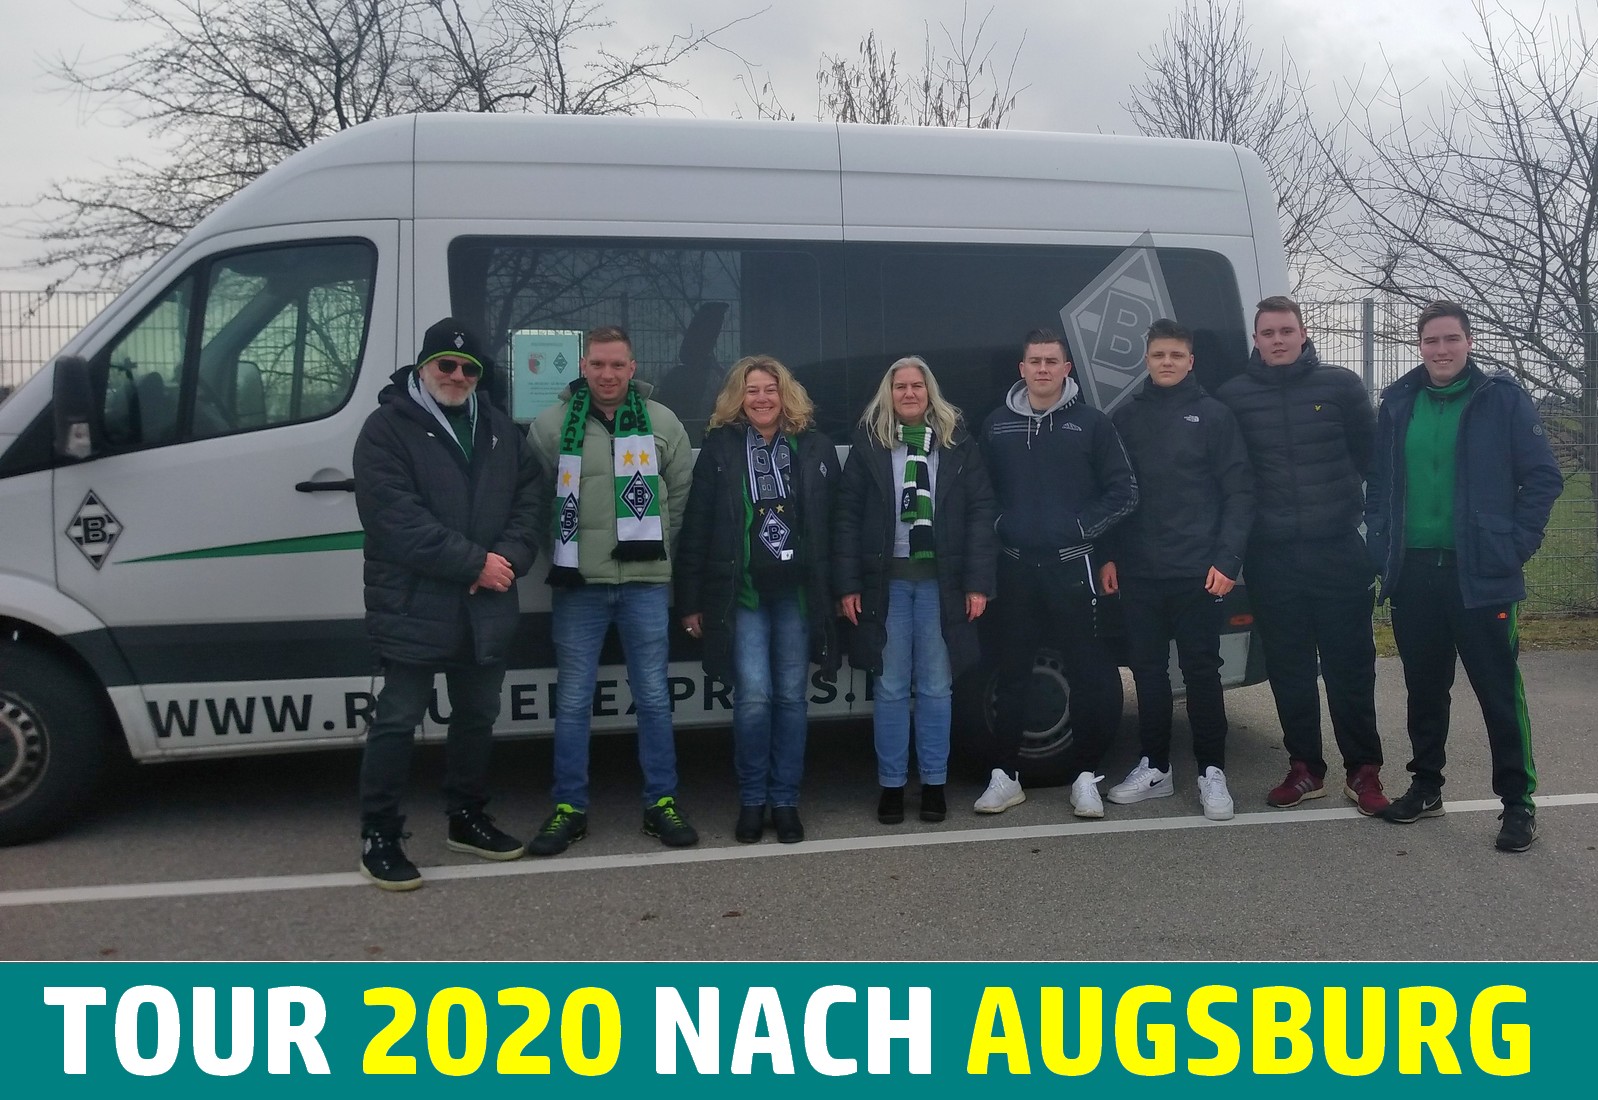 Augsburg-Tour-2020